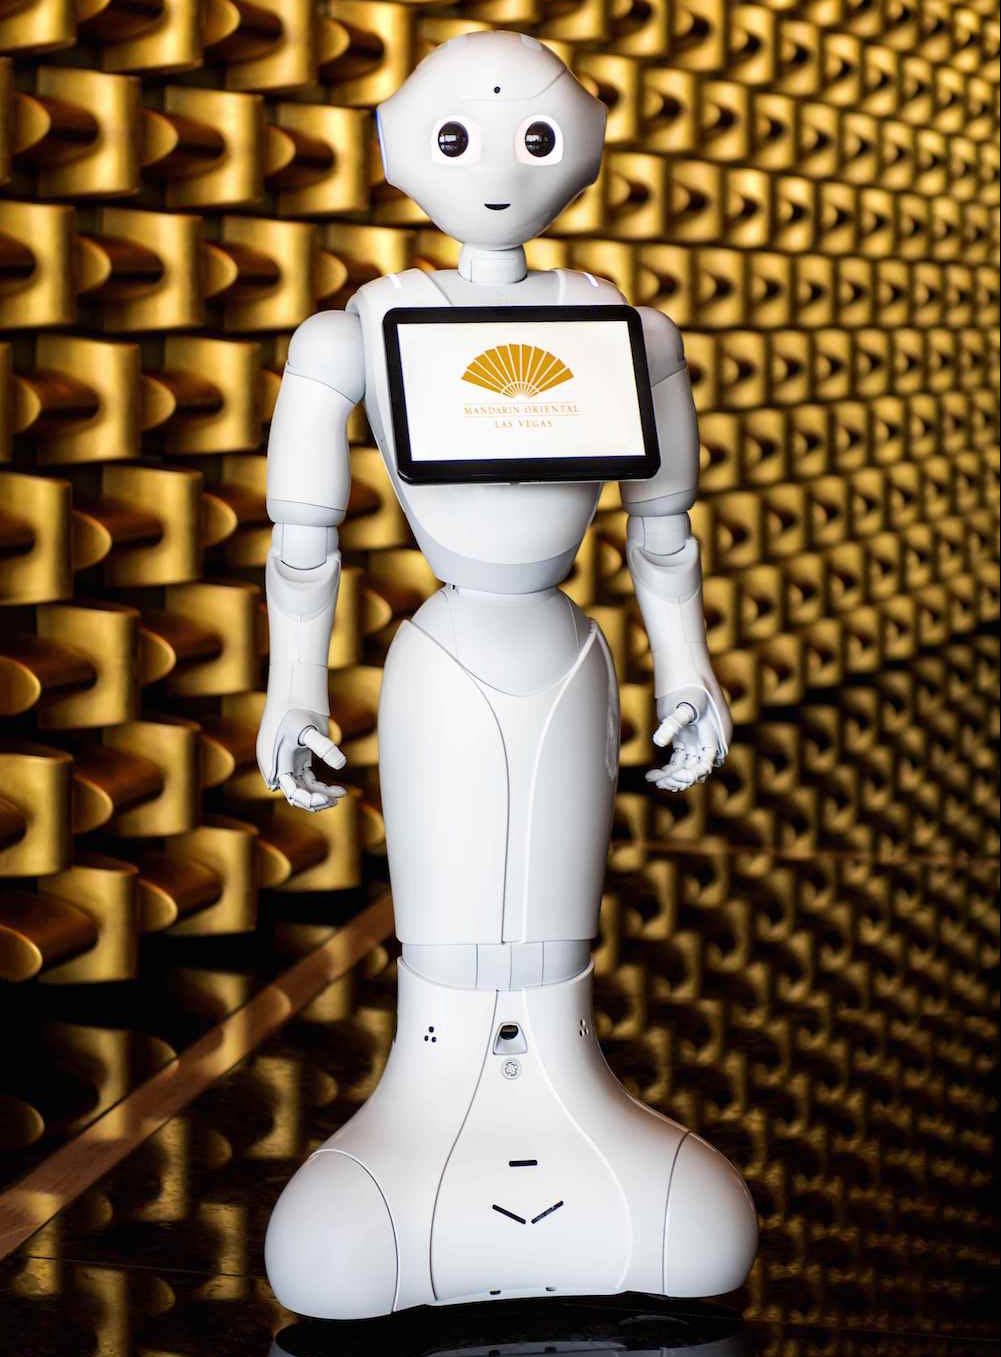 Mandarin Oriental, Las Vegas, anuncia el nombramiento de su embajador tecnológico: ‘PEPPER’, el robot humanoide